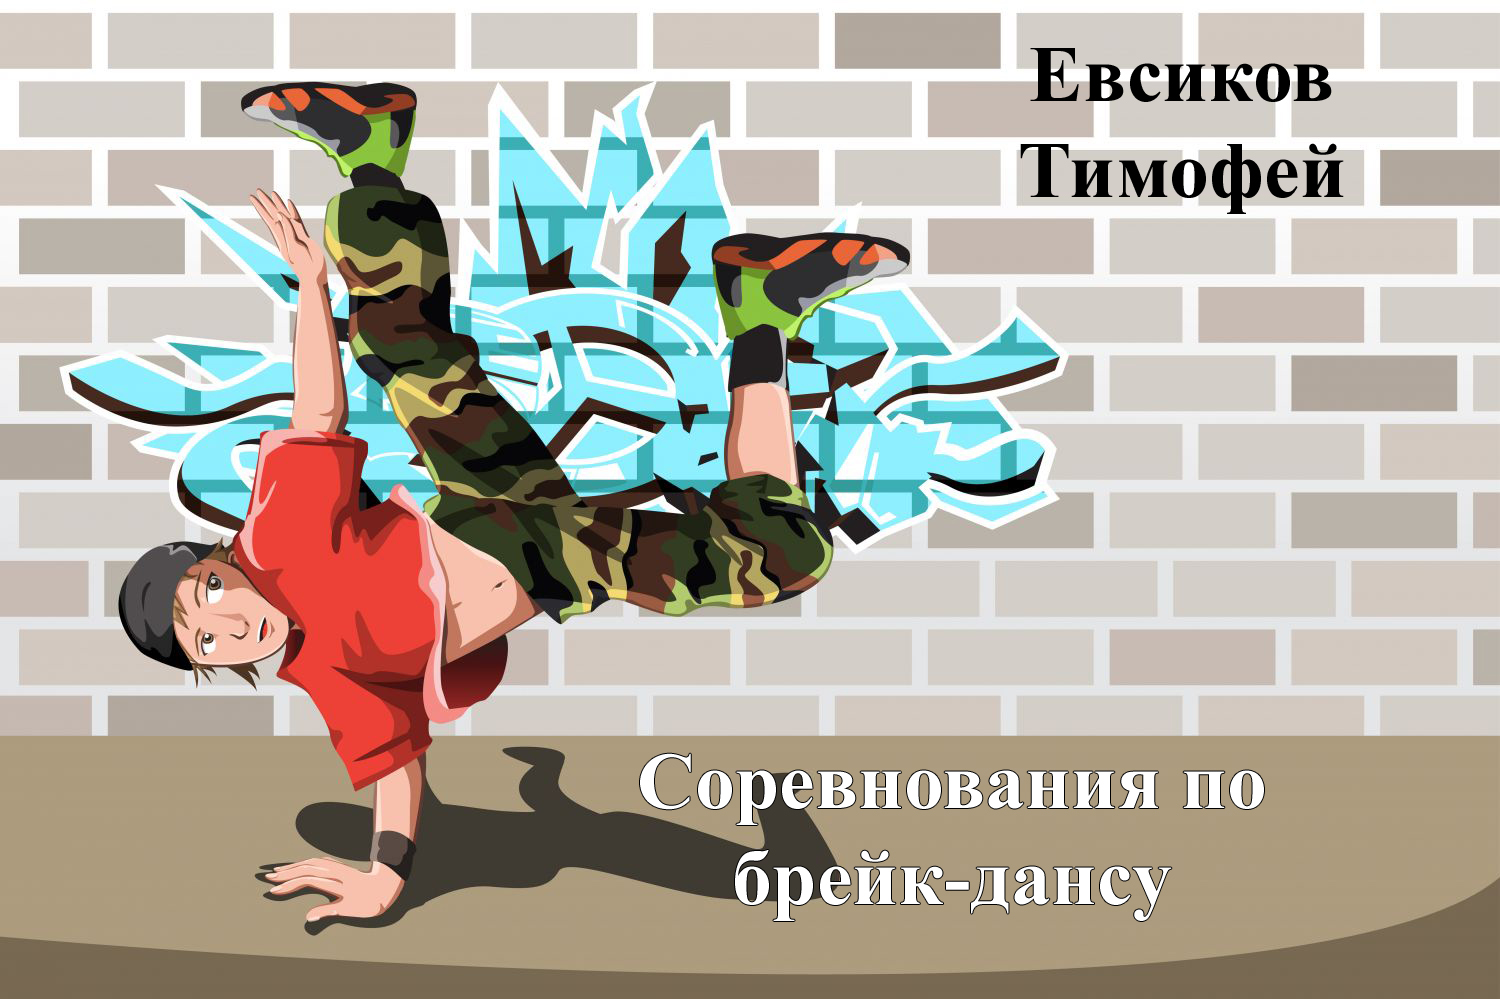 Евсиков Тимофей - номинация "Чистое исполнение танцевальной связки" в онлайн конкурсе по брейк-дансу